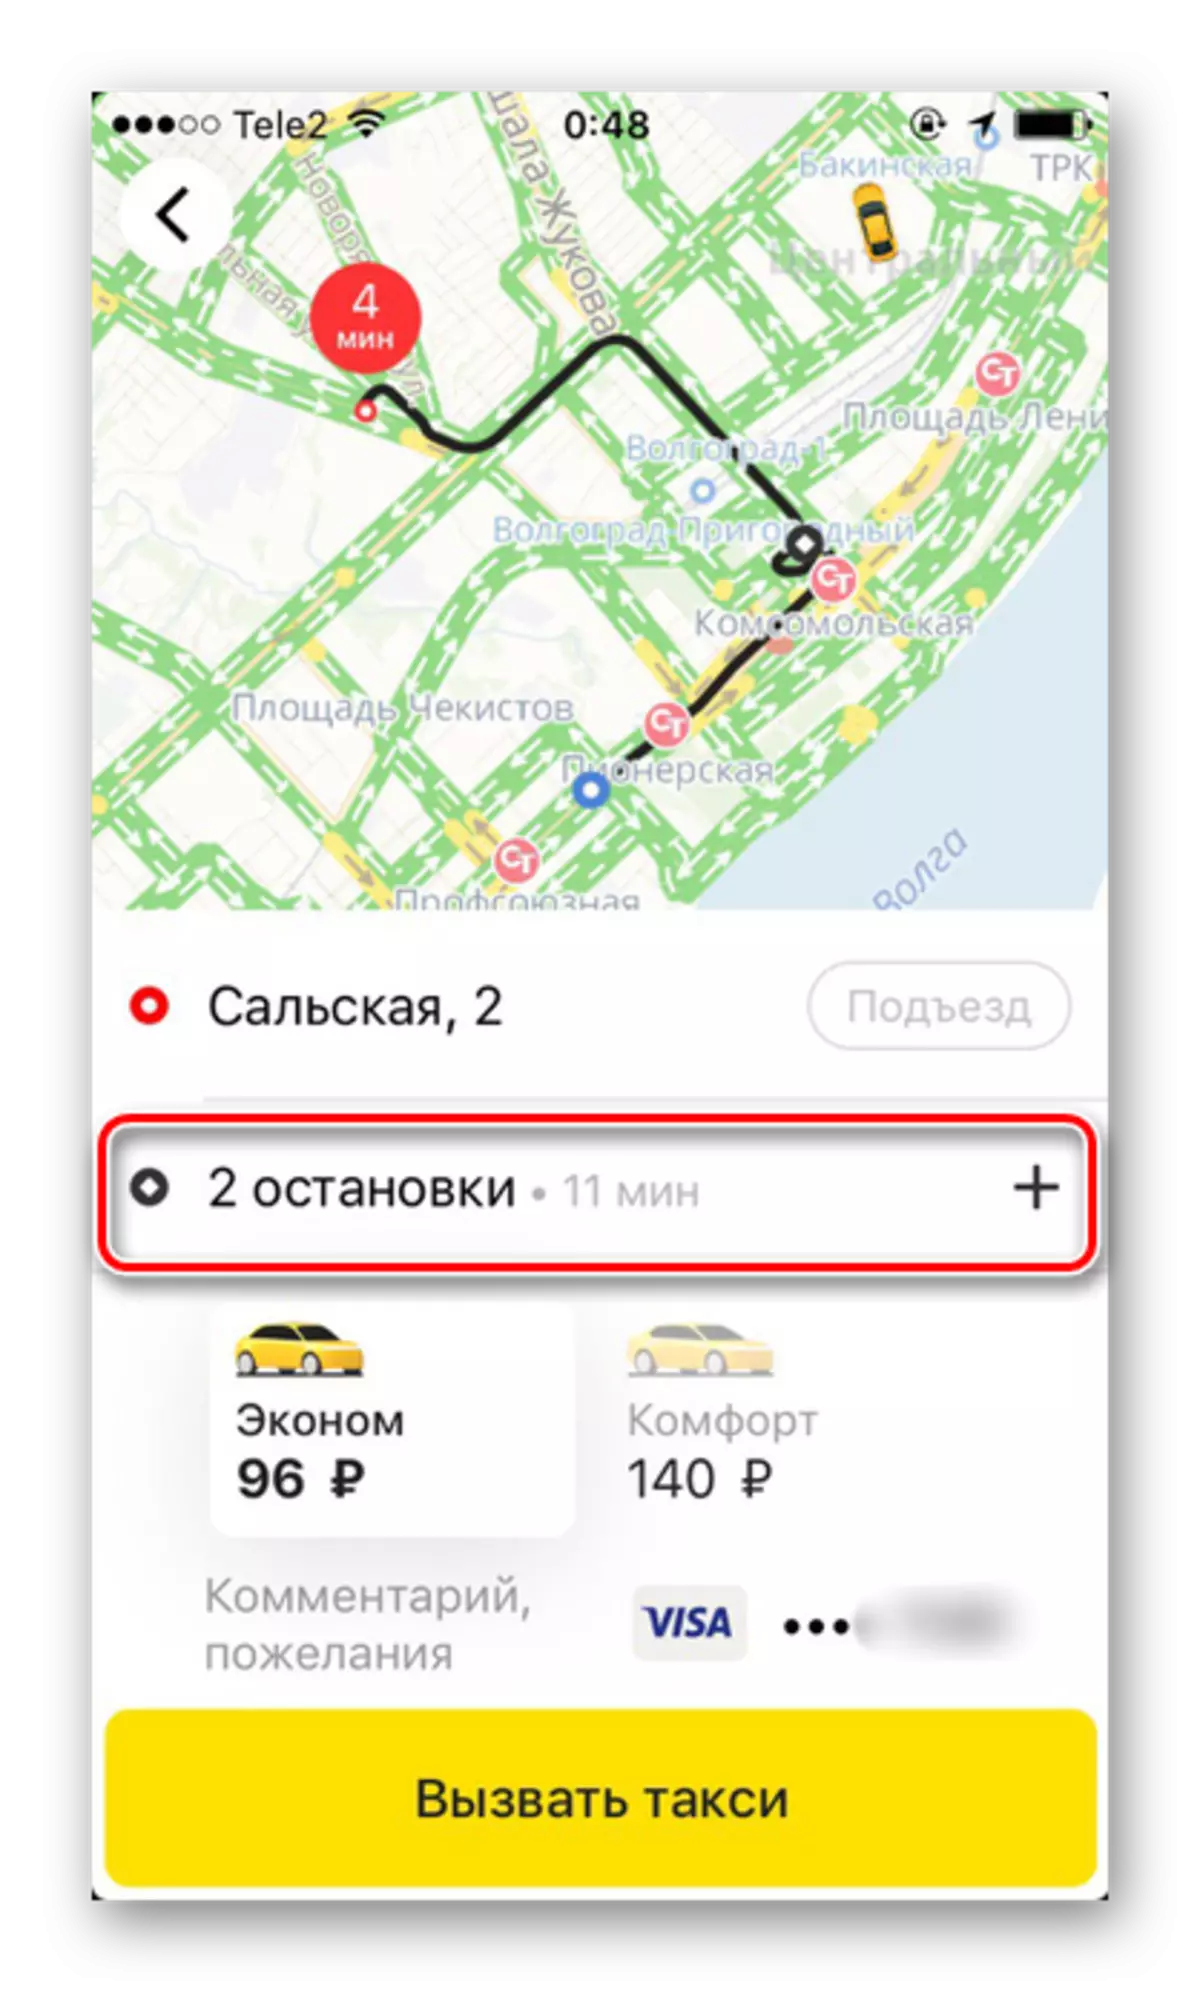 IPhone पर yandex.taxi एप्लिकेशन में टैक्सी ऑर्डर करते समय एक जटिल मार्ग के साथ एक जटिल मार्ग